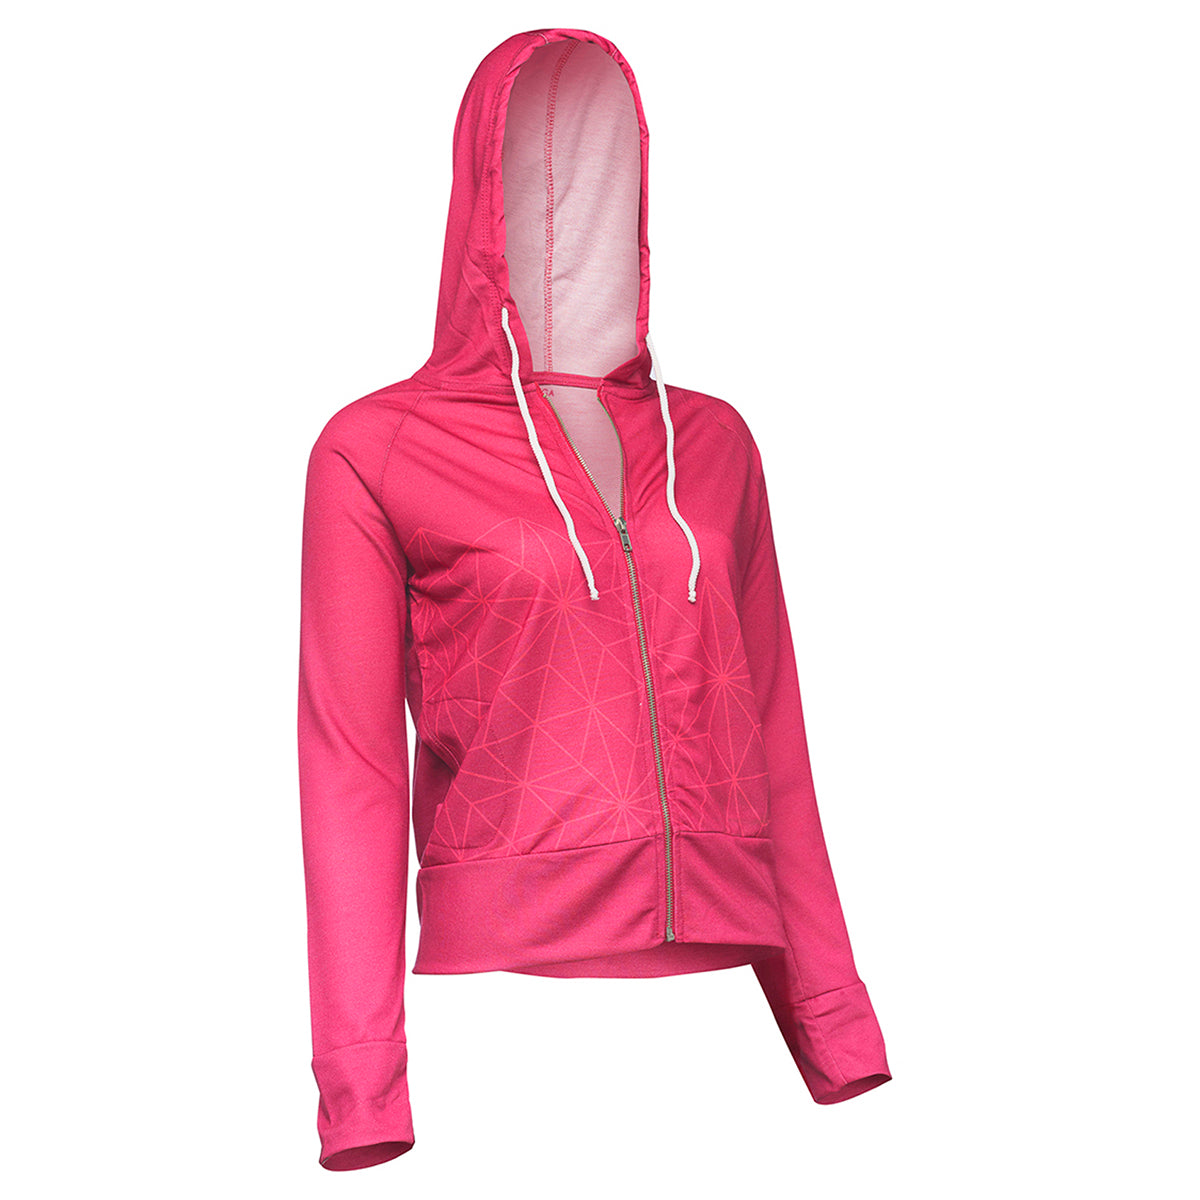 BiggYoga Aura Hoodies, Zipped, Pink, Yoga Collection, Long Sleeve,